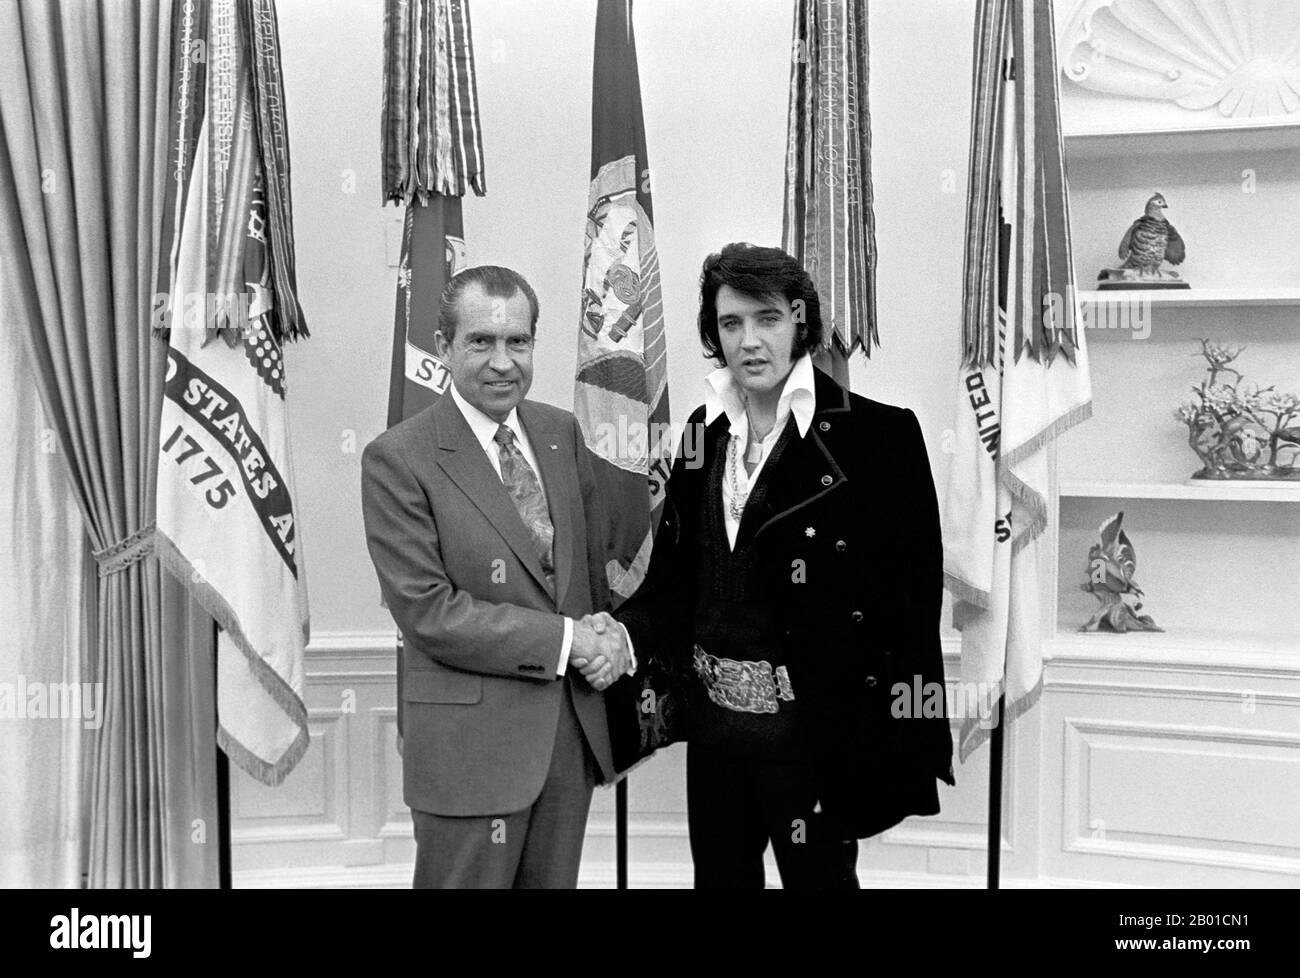 USA: Il presidente Richard Nixon (9 gennaio 1913 - 22 aprile 1994) stringe le mani con Elvis Presley (8 gennaio 1935 - 16 agosto 1977) alla Casa Bianca, 21 dicembre 1970. Elvis Presley ha incontrato il presidente Richard Nixon nell'Ufficio ovale della Casa Bianca il 21st dicembre 1970. La Nixon Library & Birthplace vende un certo numero di oggetti ricordo con questa foto e la didascalia, 'il presidente & il re'. Cheekily, questa immagine è detta per essere 'dei due più grandi artisti di registrazione del 20th ° secolo'. Foto Stock